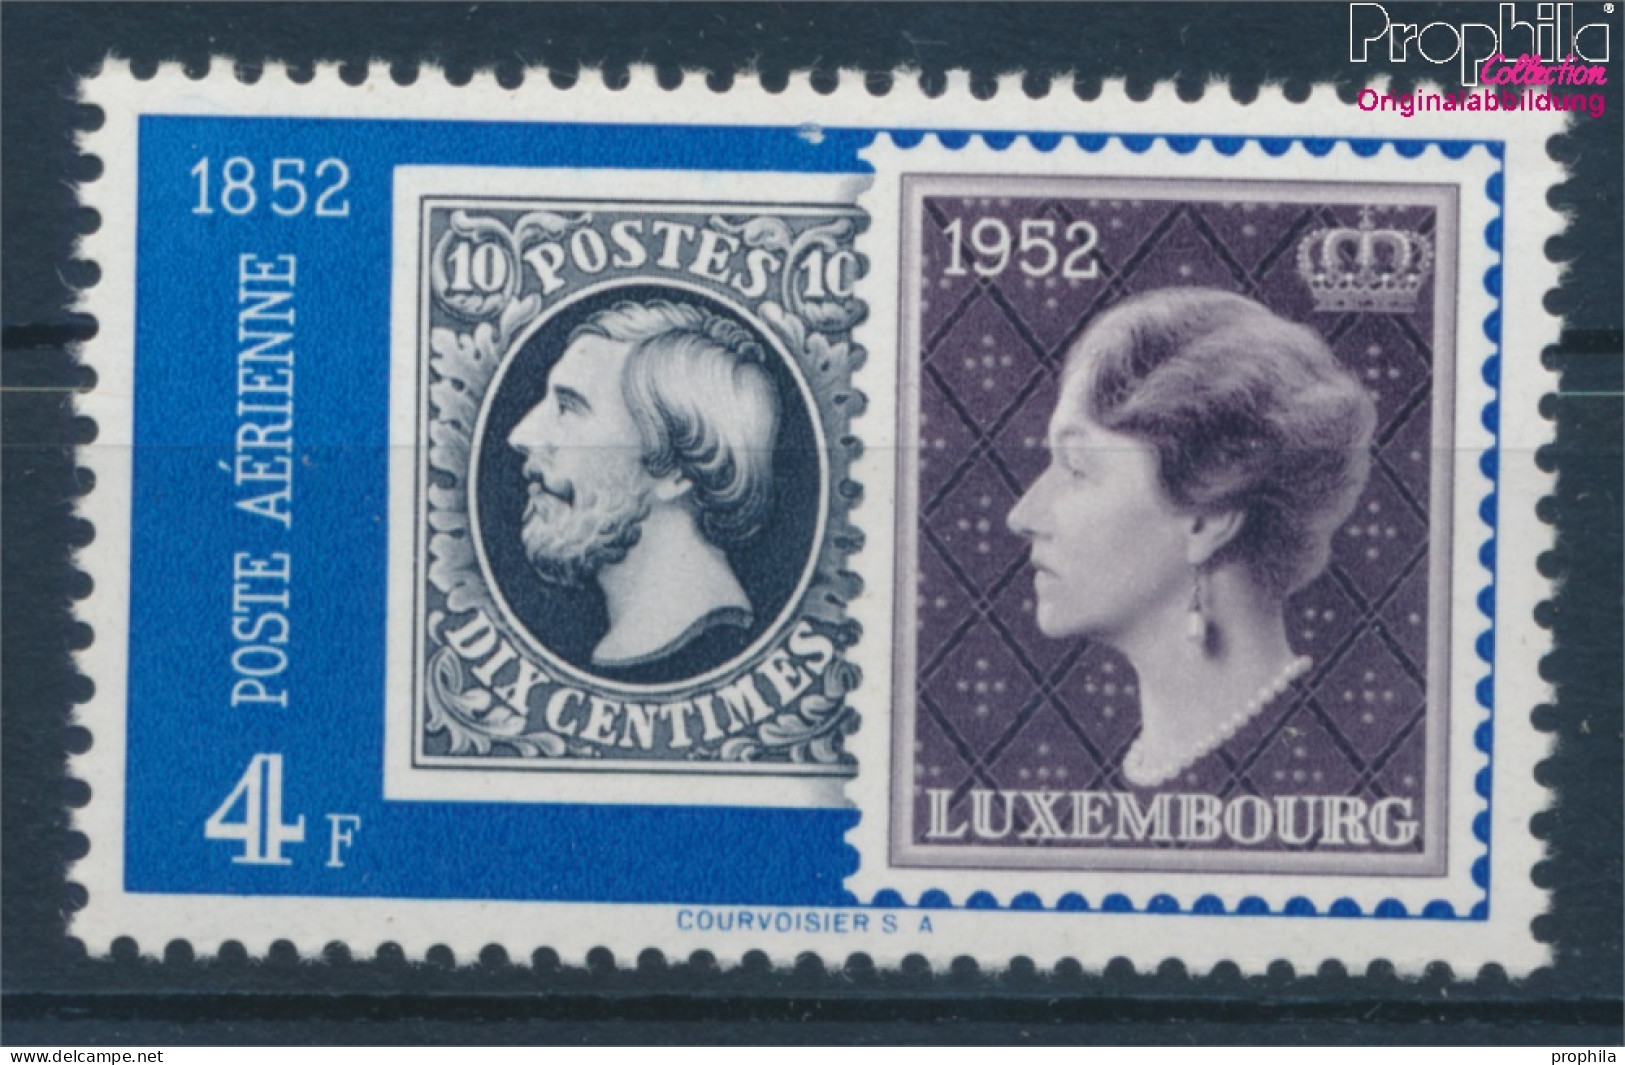 Luxemburg 492 Postfrisch 1952 Philatelie (10363181 - Ongebruikt